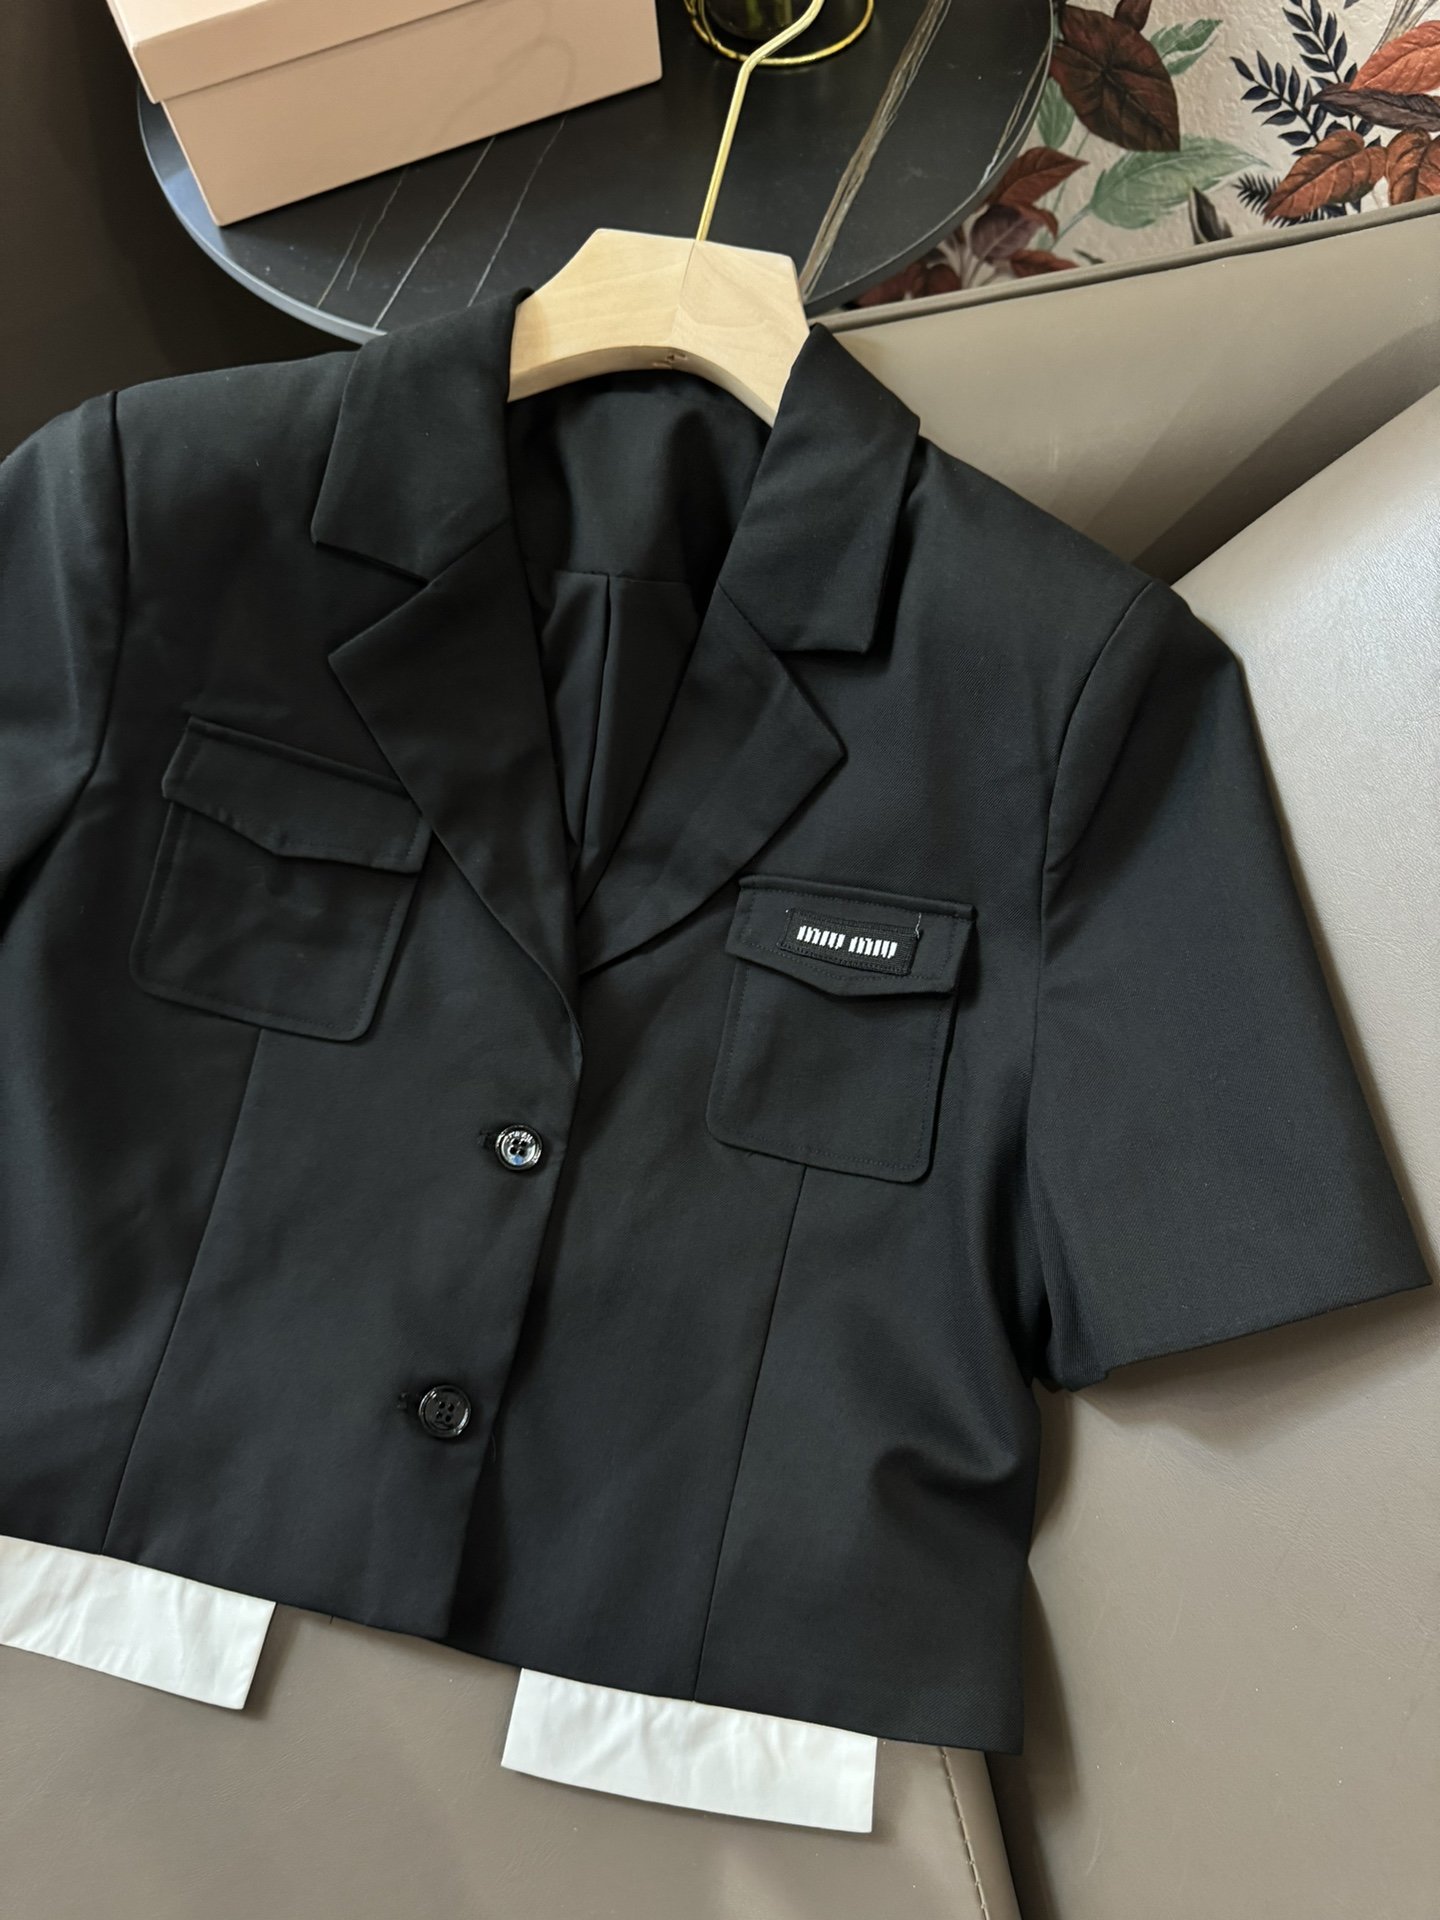 MQ24011#新款套装Miumiu拼接短袖上衣压褶半裙套装灰色黑色SML